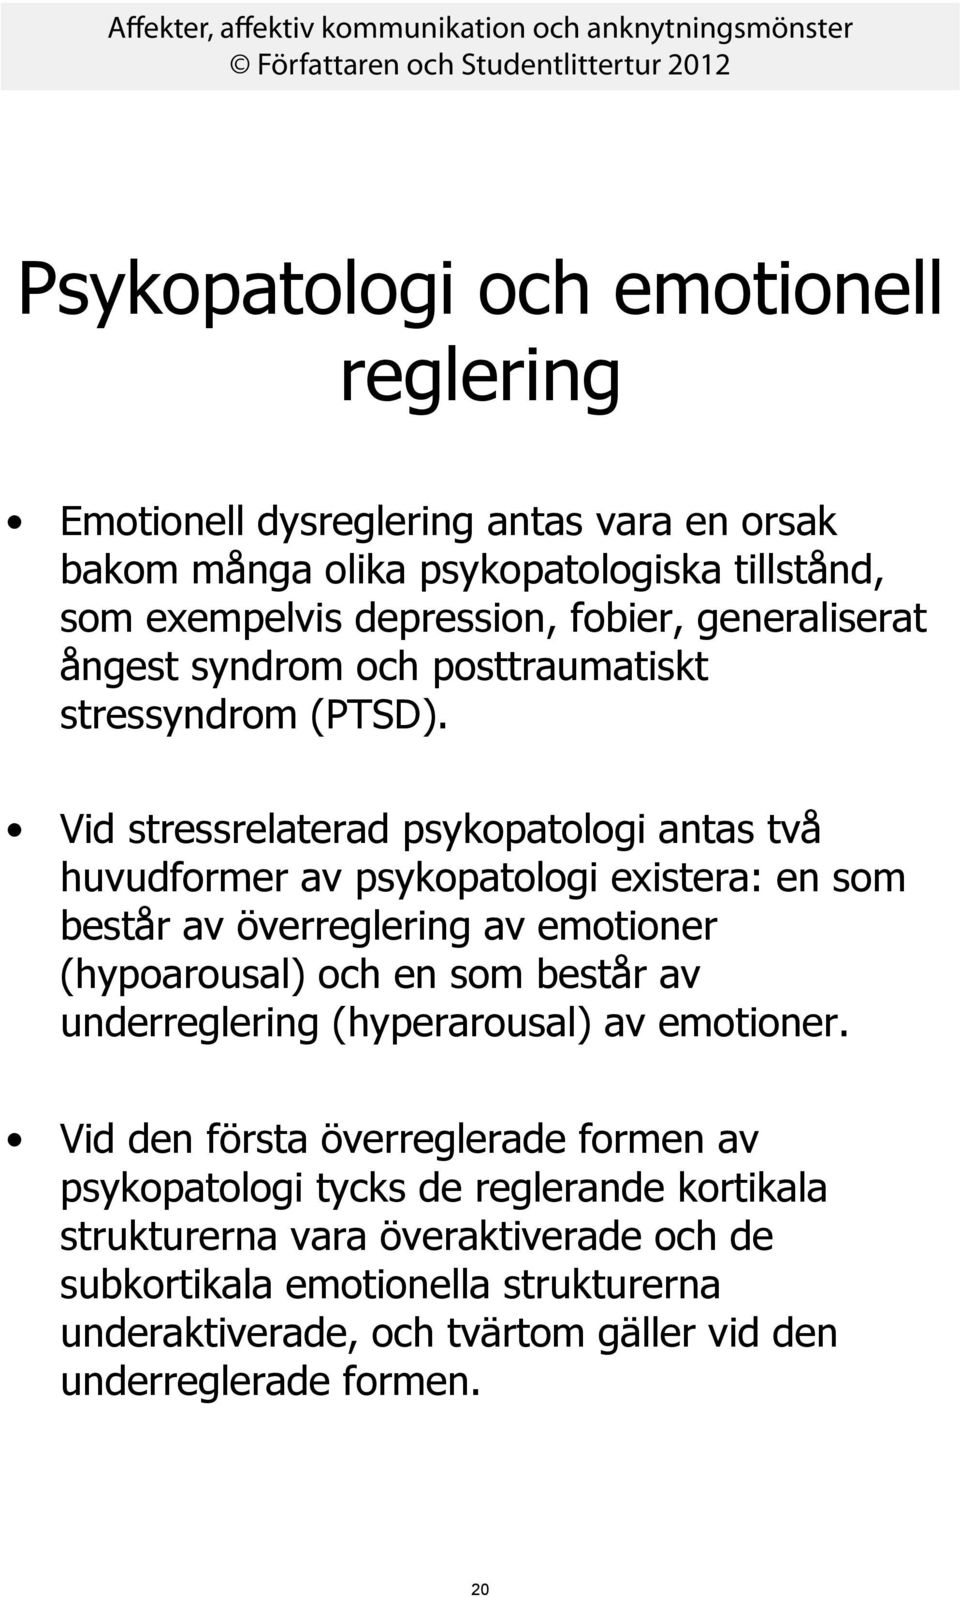 Vid stressrelaterad psykopatologi antas två huvudformer av psykopatologi existera: en som består av överreglering av emotioner (hypoarousal) och en som består av